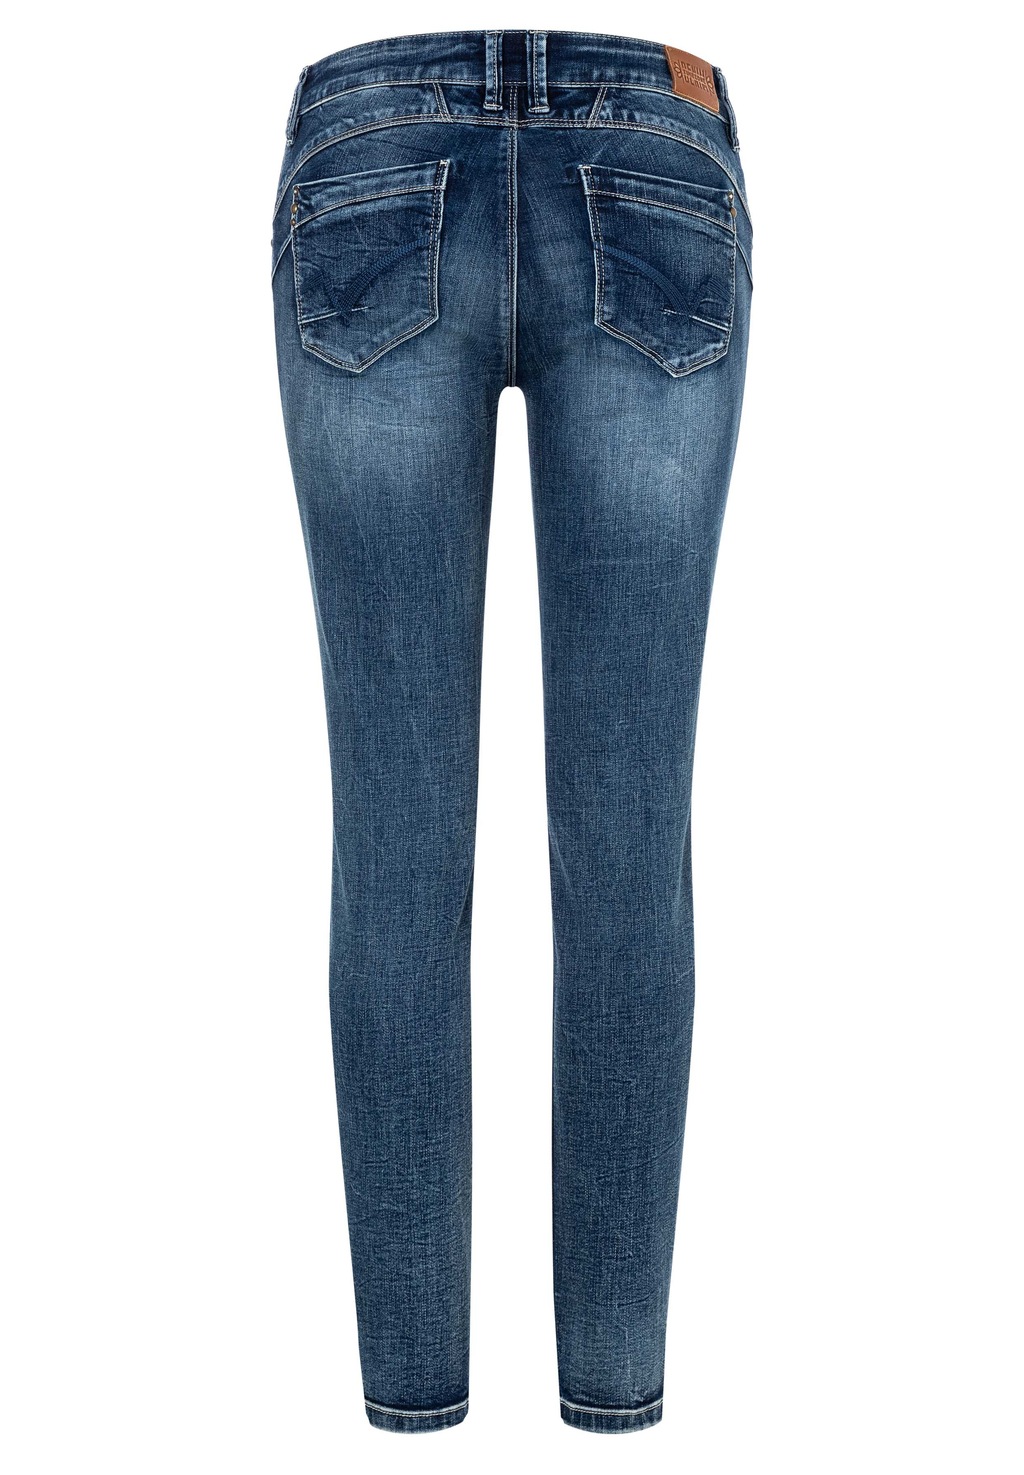 TIMEZONE Damen Jeans SLIM ENAYTZ - Slim Fit - Blau - Muted Blue Wash günstig online kaufen